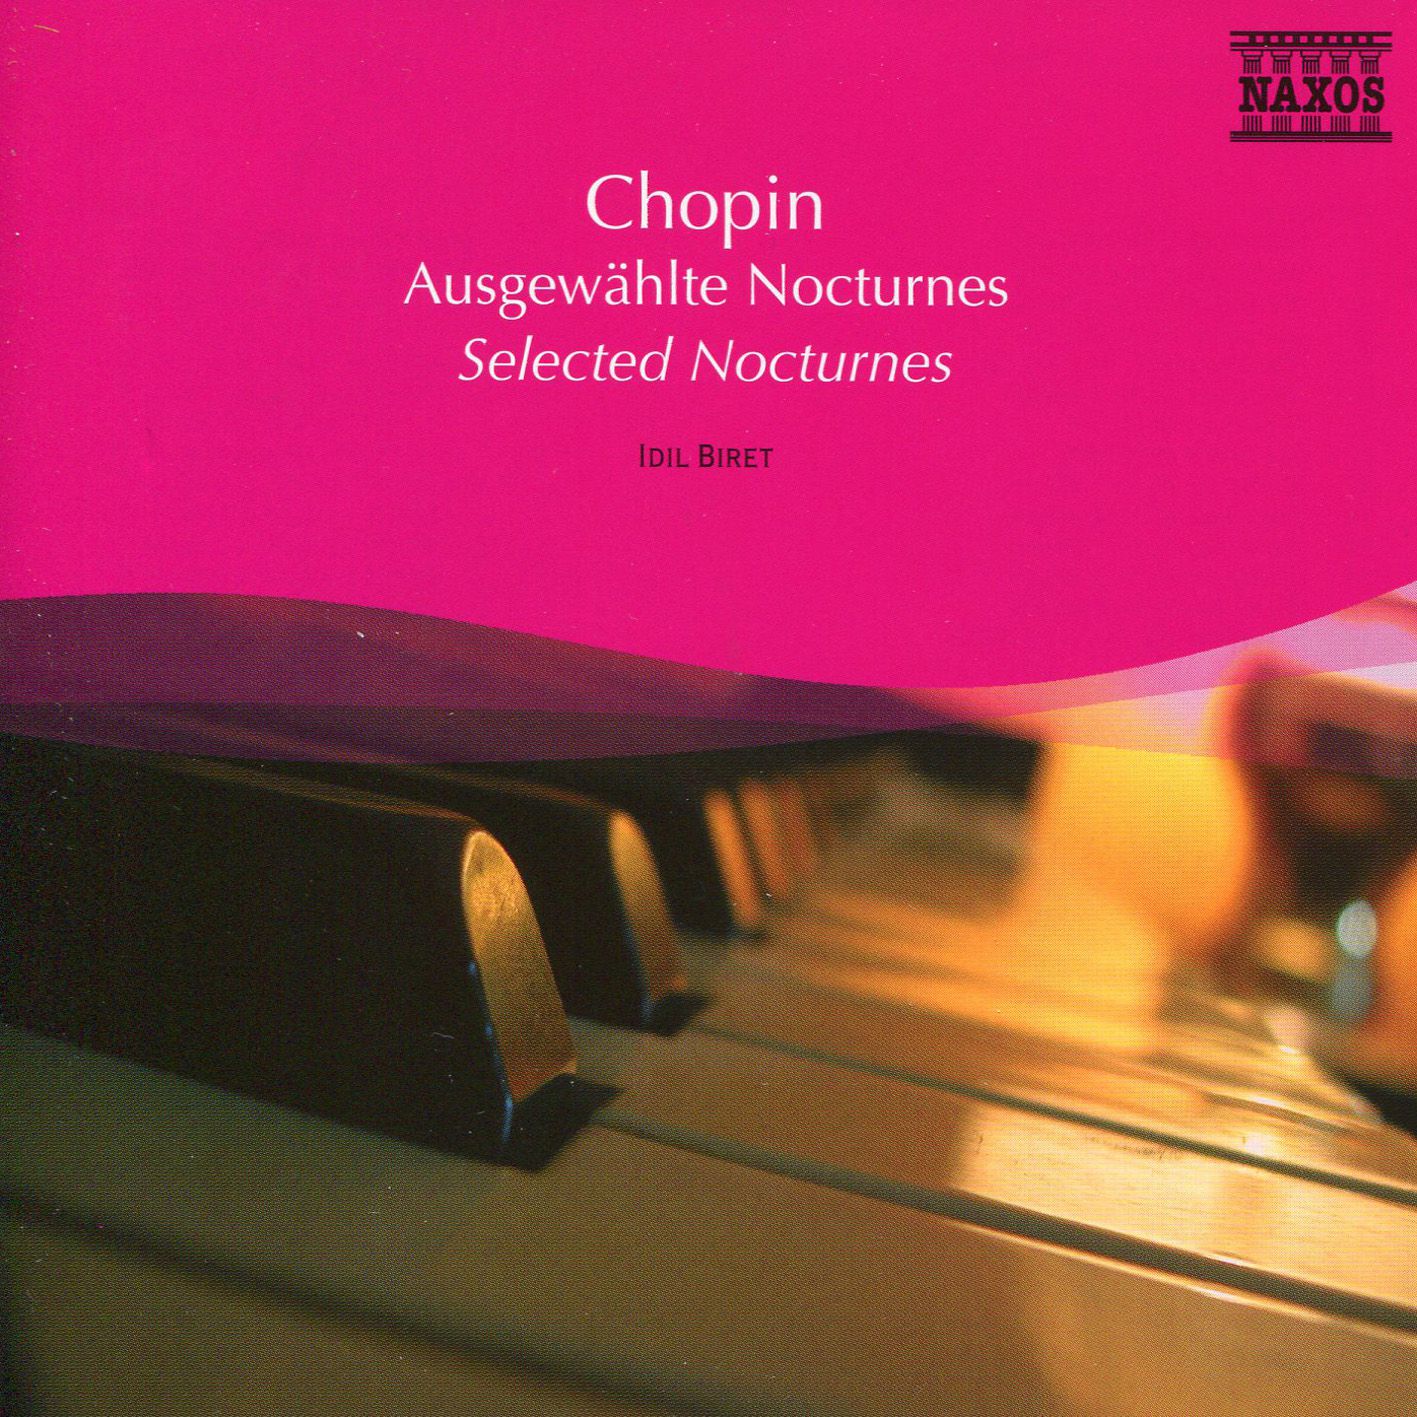 Nocturne in e flat major op. Chopin Nocturne. Фредерик Шопен Nocturne no. 20 in. Frederic Chopin - Nocturne in b Flat Minor, op.9 no.1. Chopin Nocturne op 9 no 1 буквами.